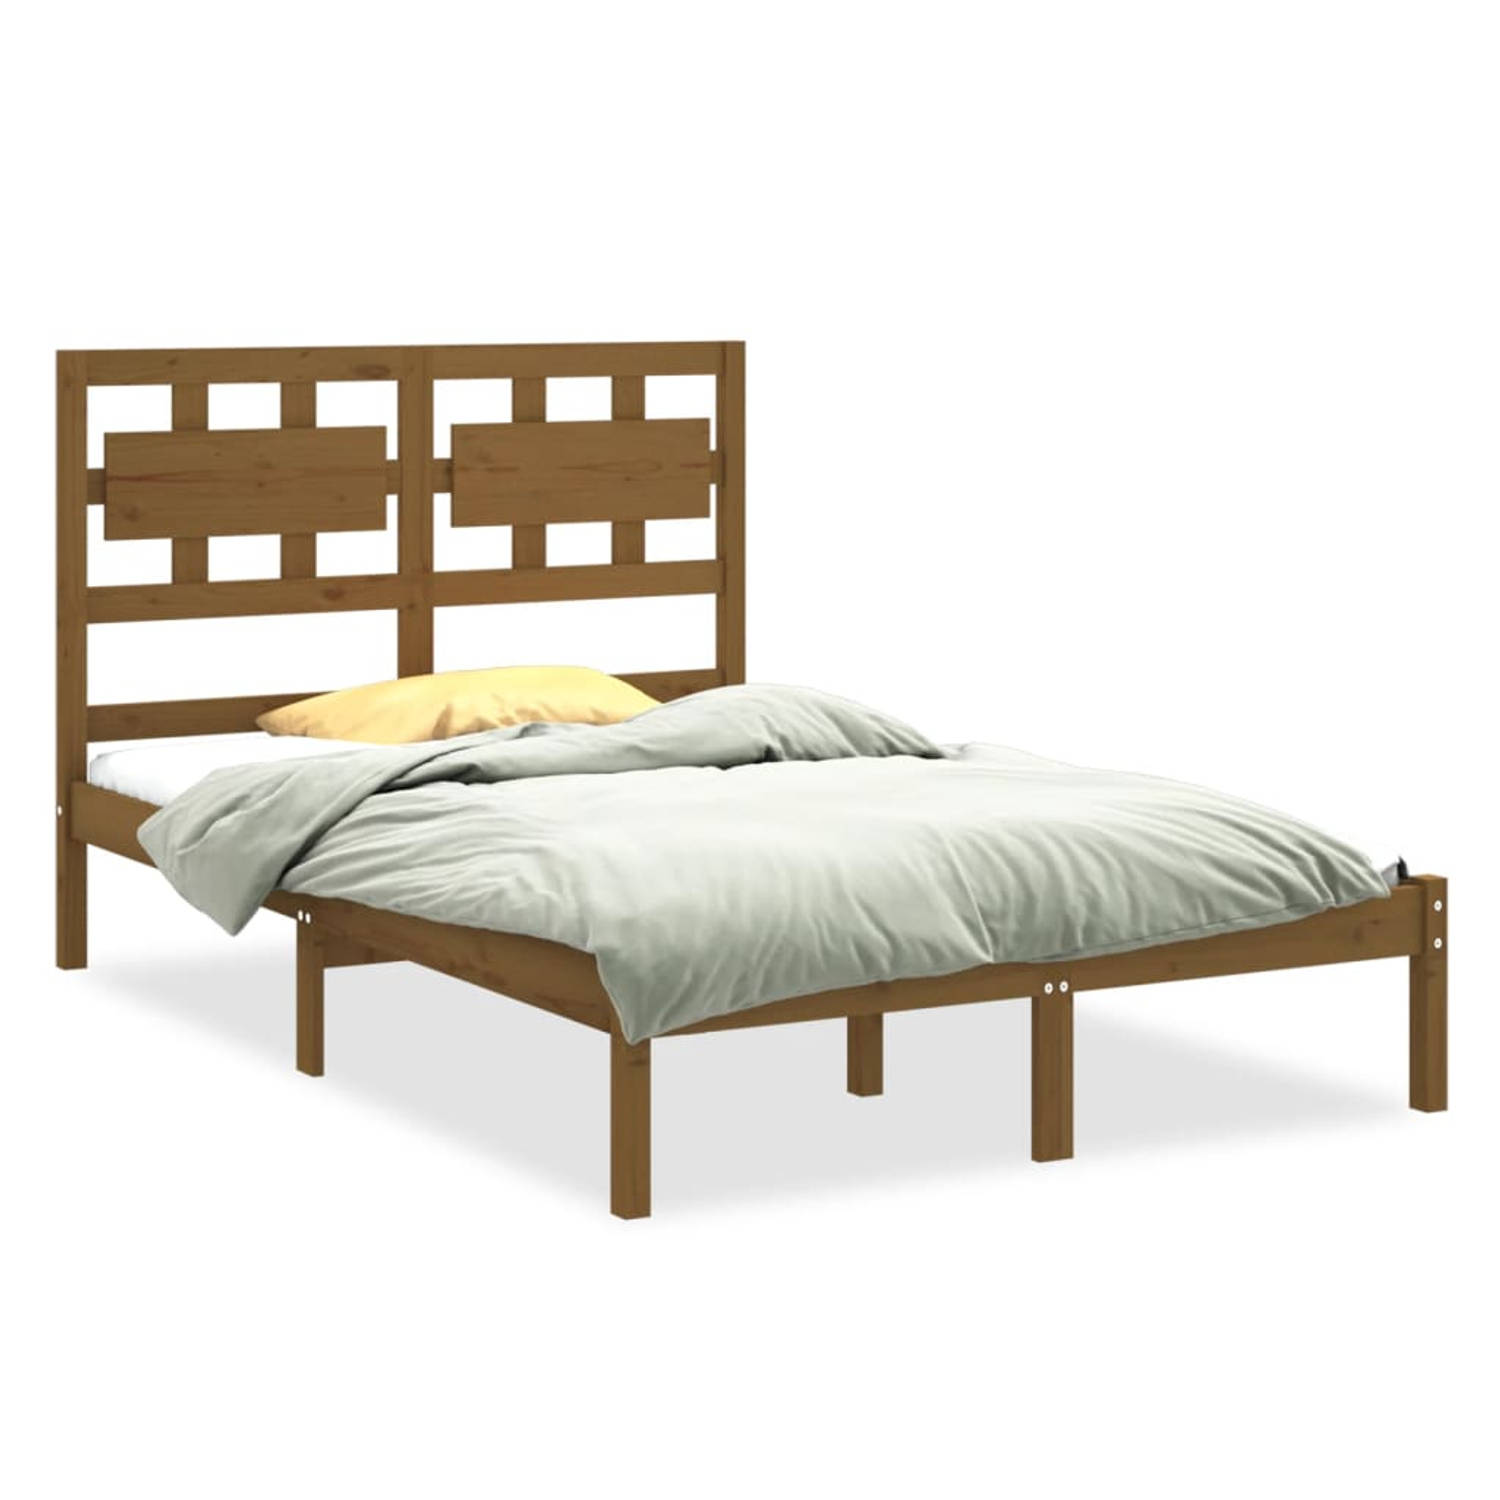 The Living Store Bedframe massief hout honingbruin 140x200 cm - Bedframe - Bedframes - Tweepersoonsbed - Bed - Bedombouw - Dubbel Bed - Frame - Bed Frame - Ledikant - Bedframe Met